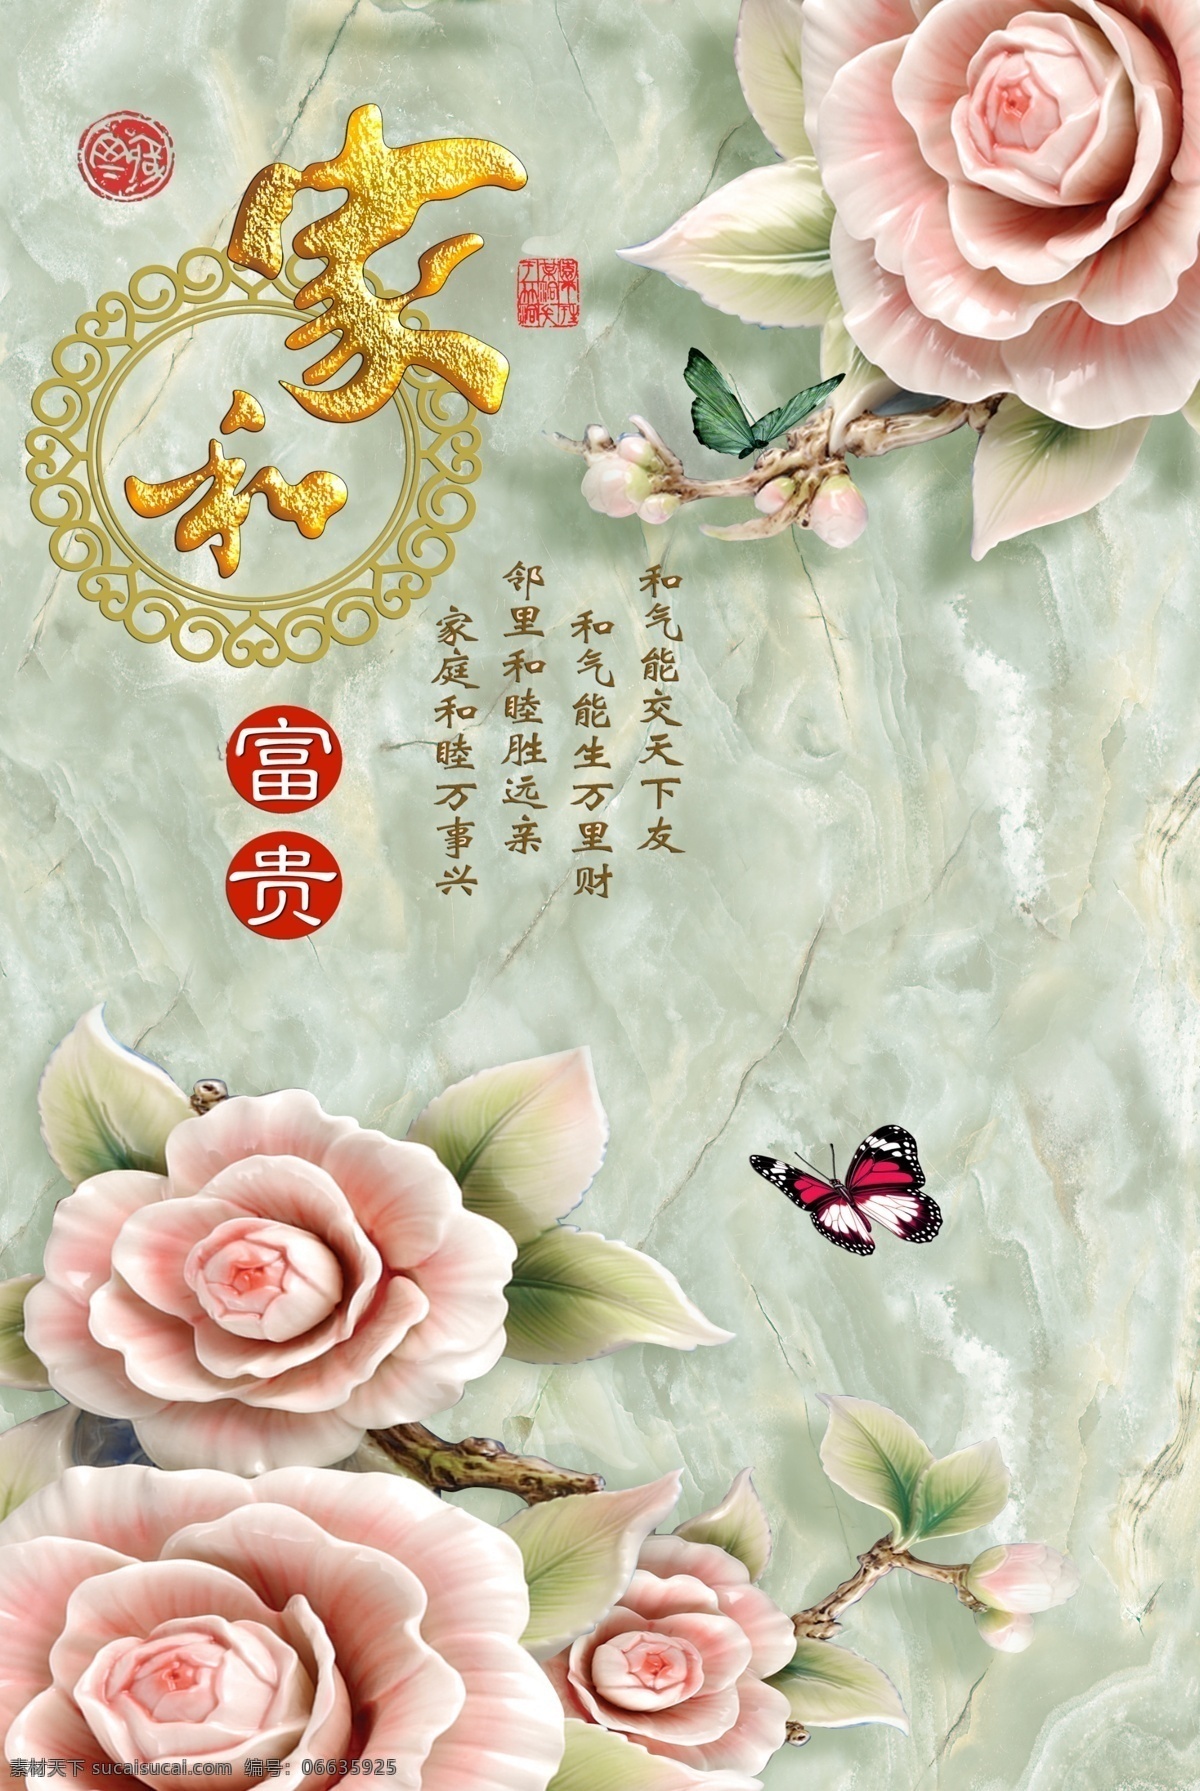 家 富贵 芙蓉花 玉芙蓉 玉雕 玉器 中国风 中式 传统 经典 古典 背景墙 瓷砖 电视背景墙